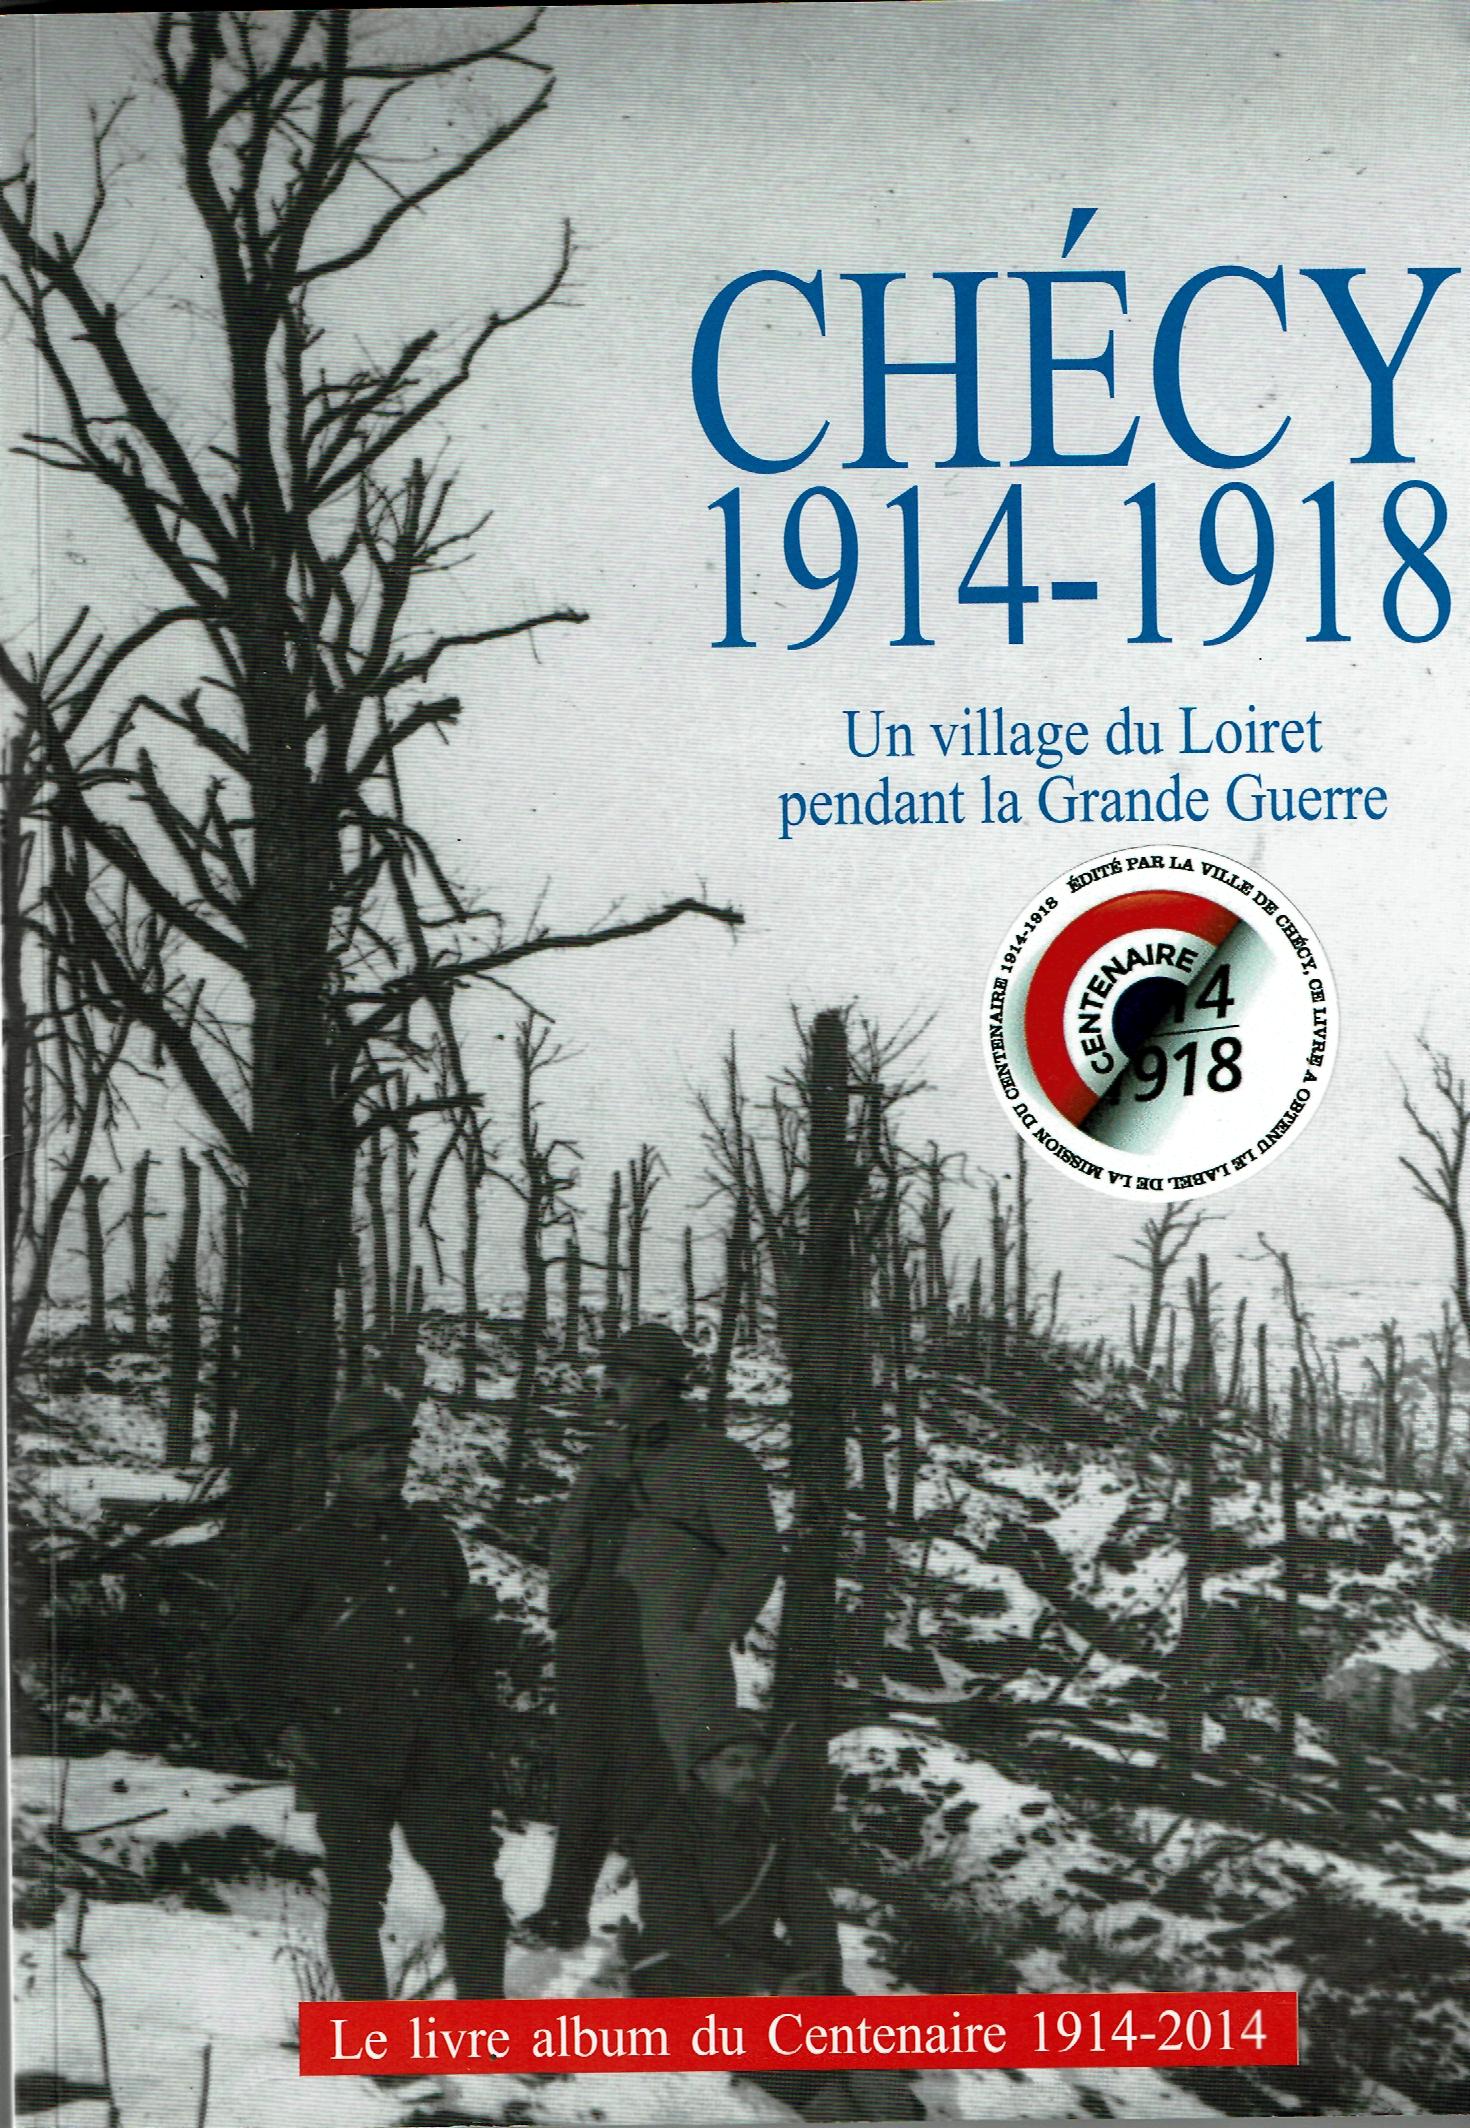 Chécy 1914-1918